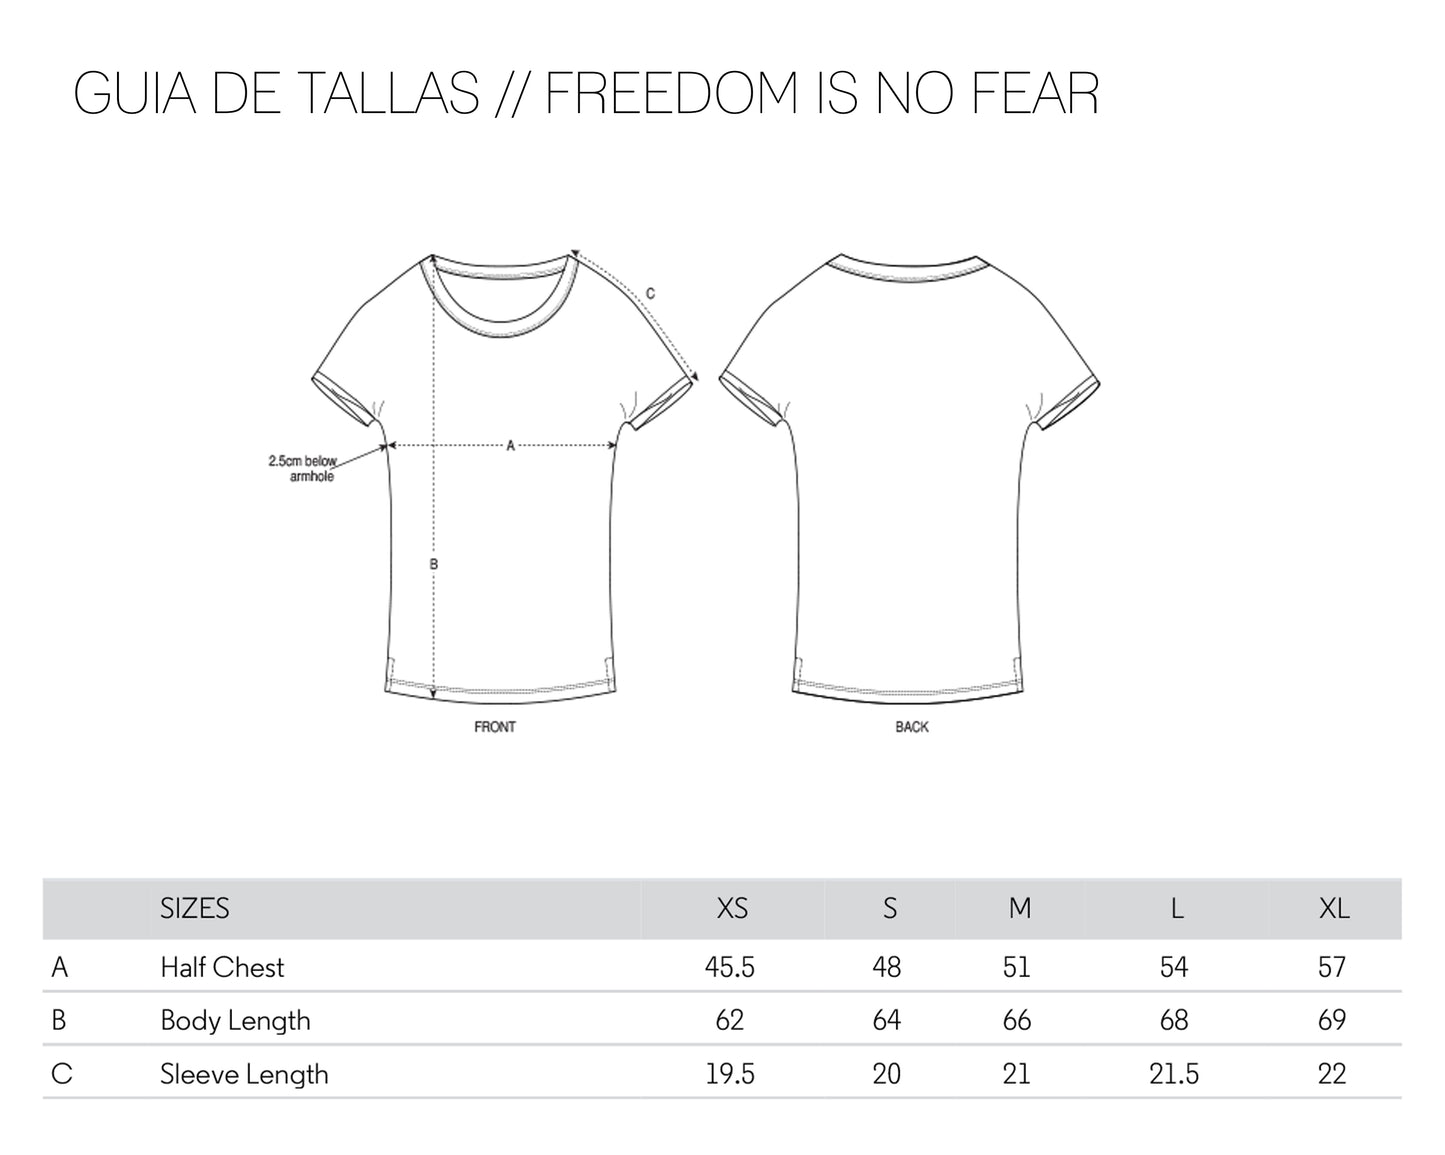 camiseta negra ecológica ropa feminista Nina Simone freedom is not fear Guía de tallas